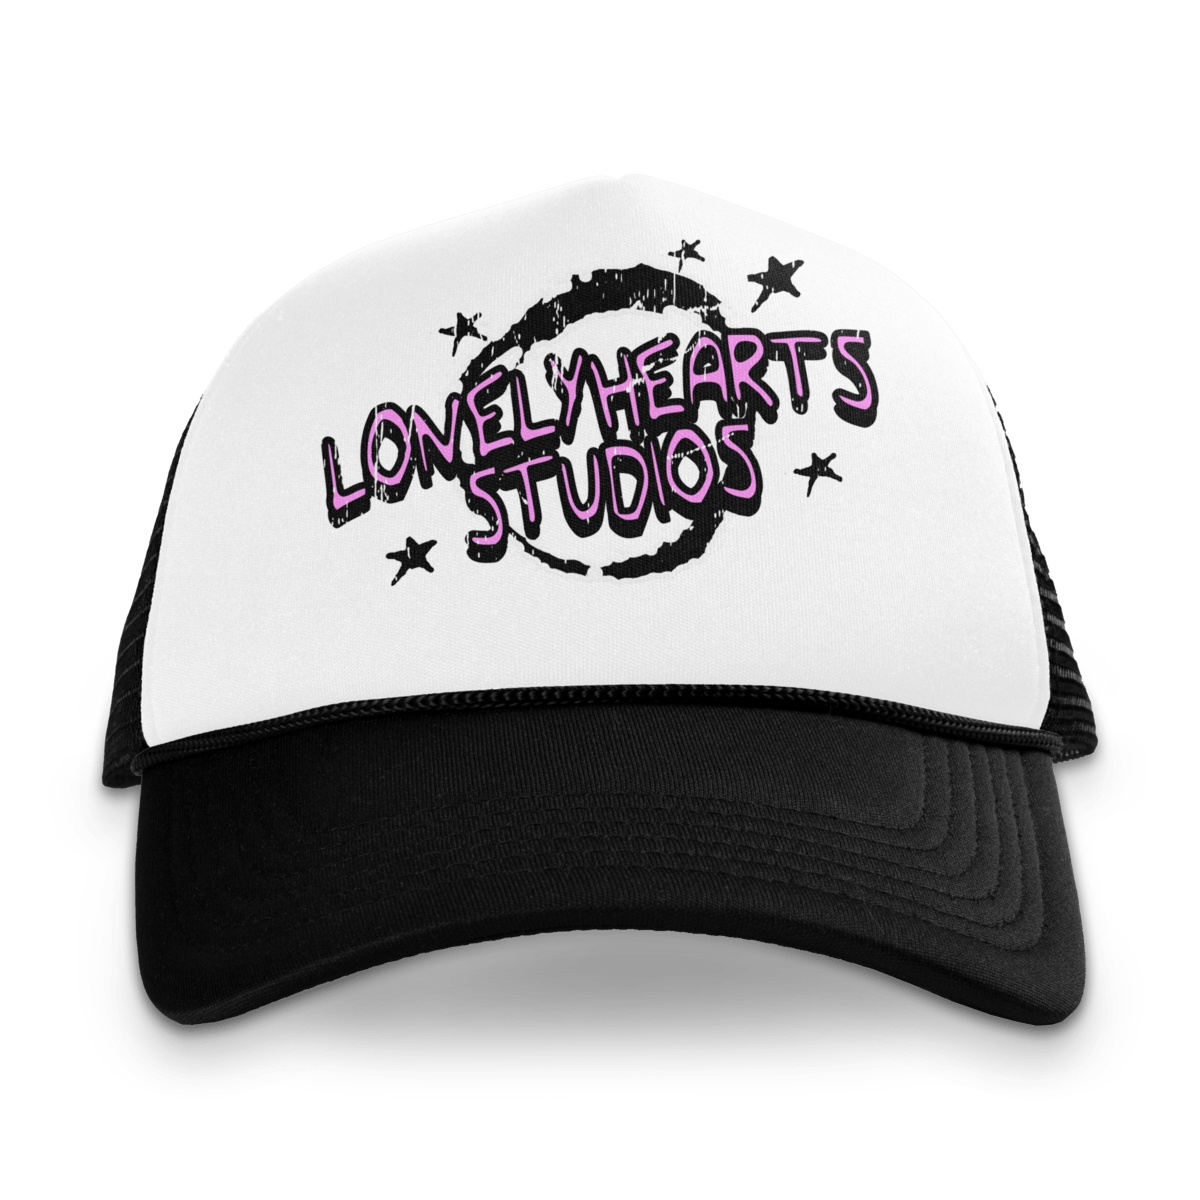 LONLY HEARTS trucker hat Lone Hearts Studios Trucker Hat